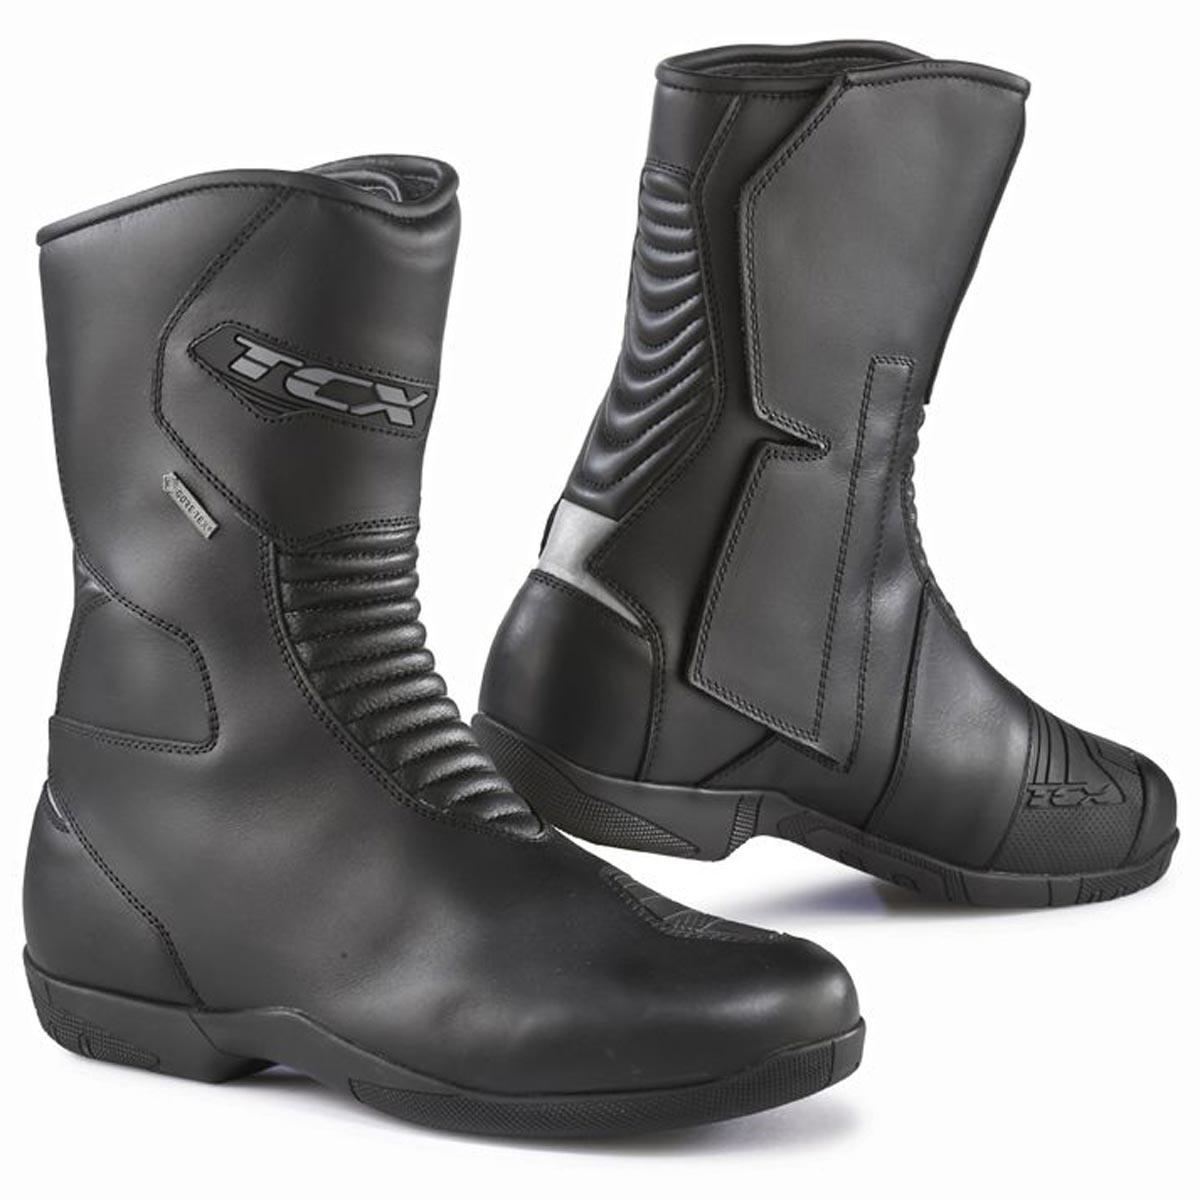 TCX X-Five 4 Boots GTX Black 49